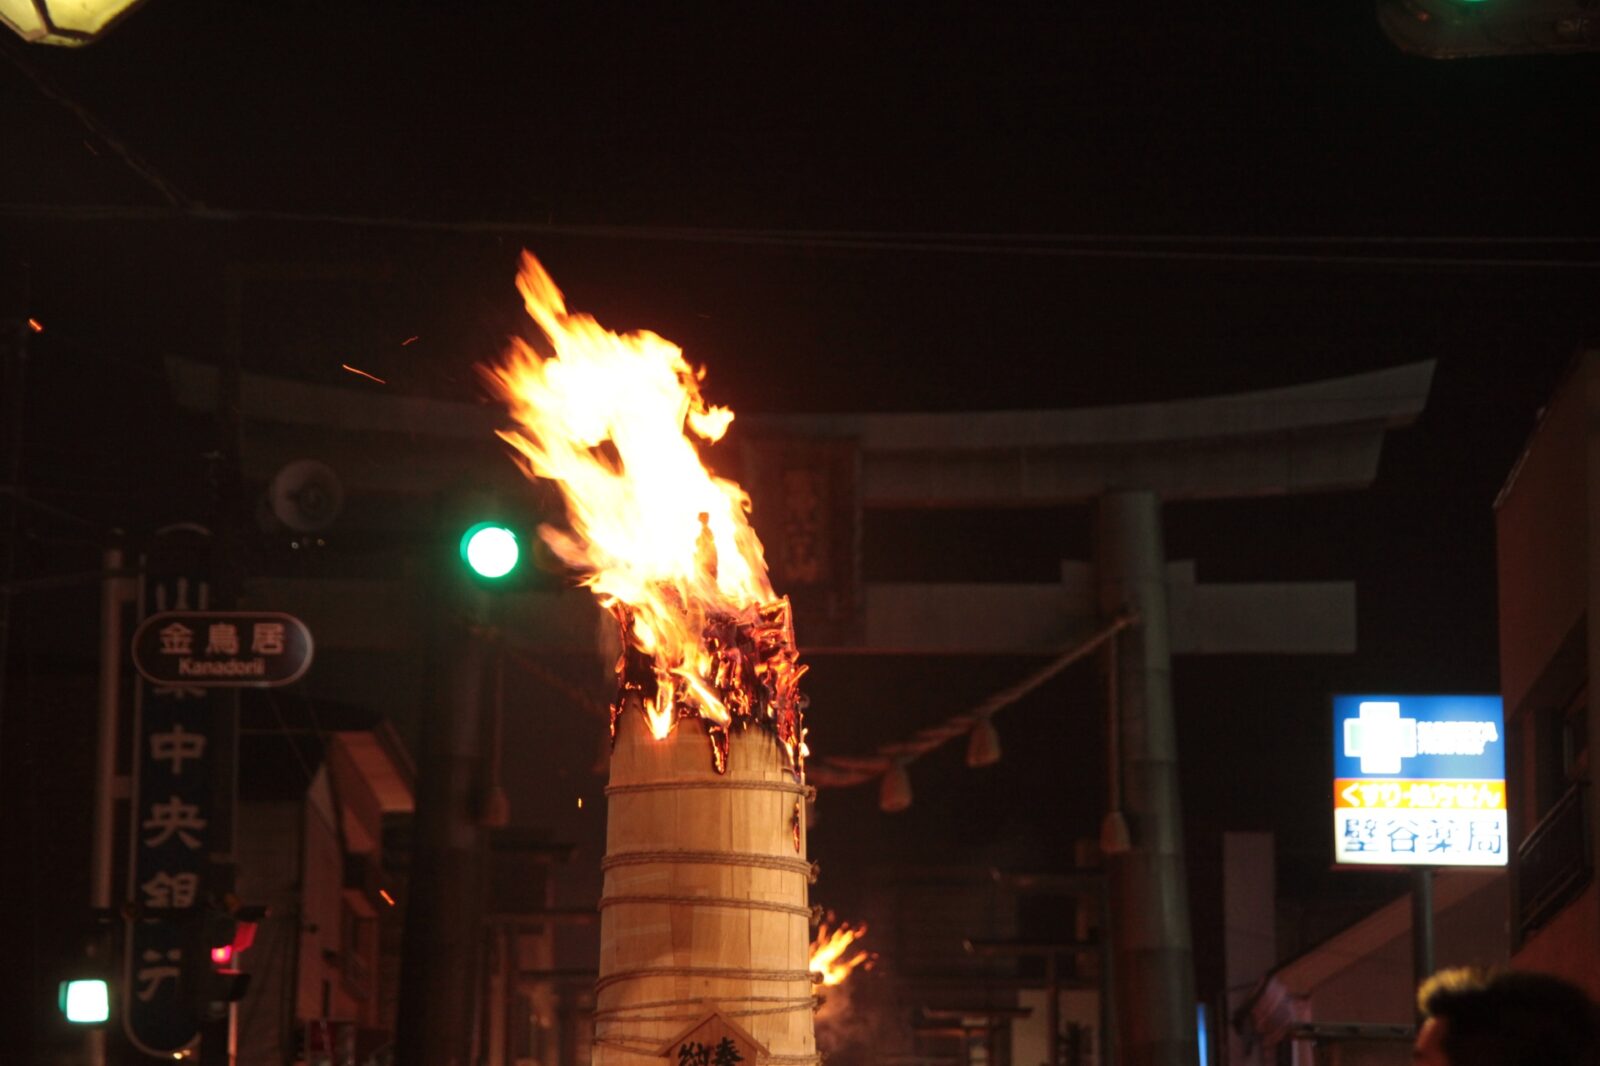 吉田の火祭り